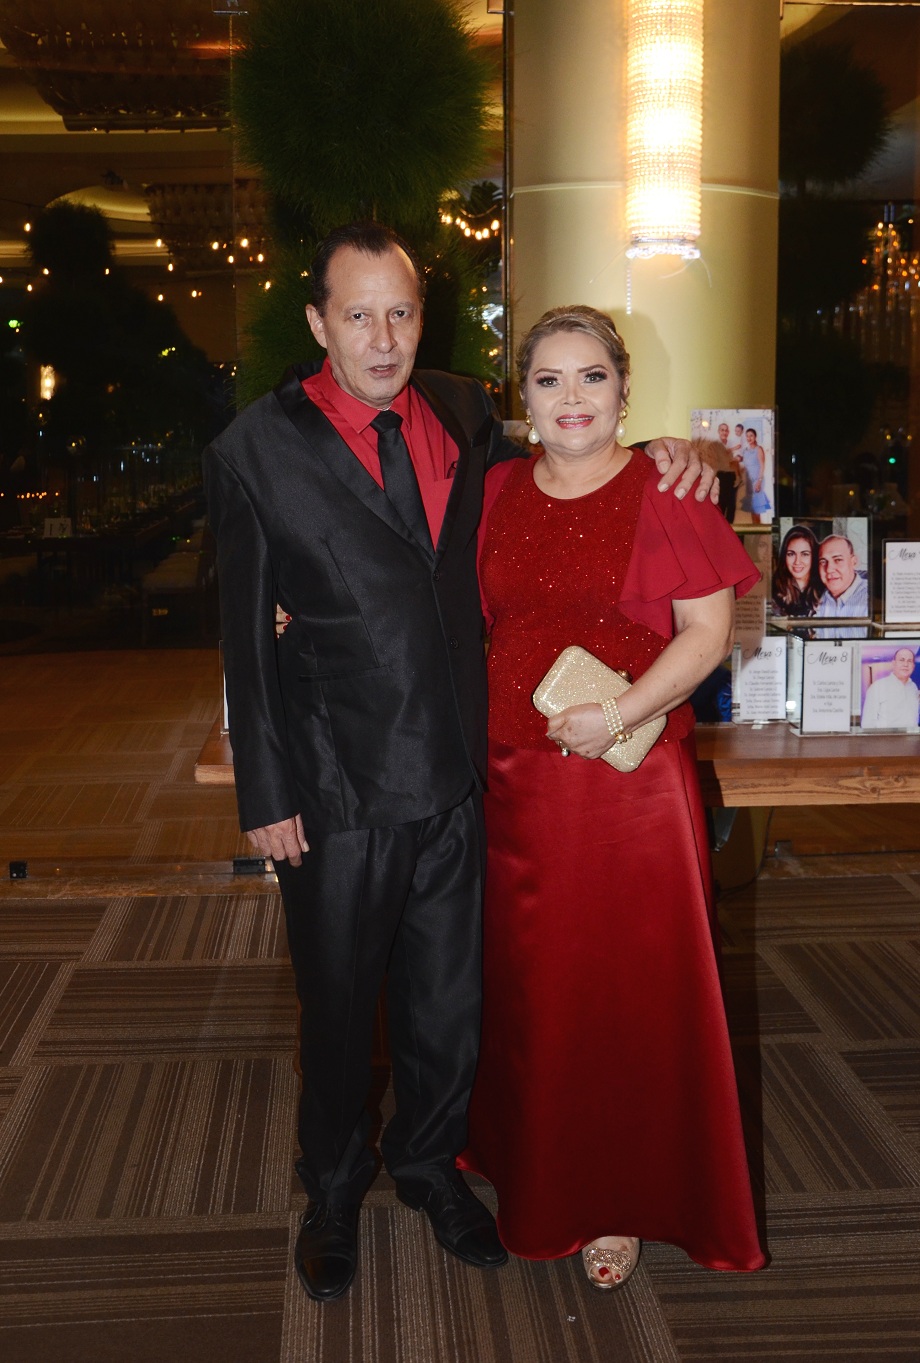 Enrique Lanza y Marbeli Medina unieron sus vidas en matrimonio